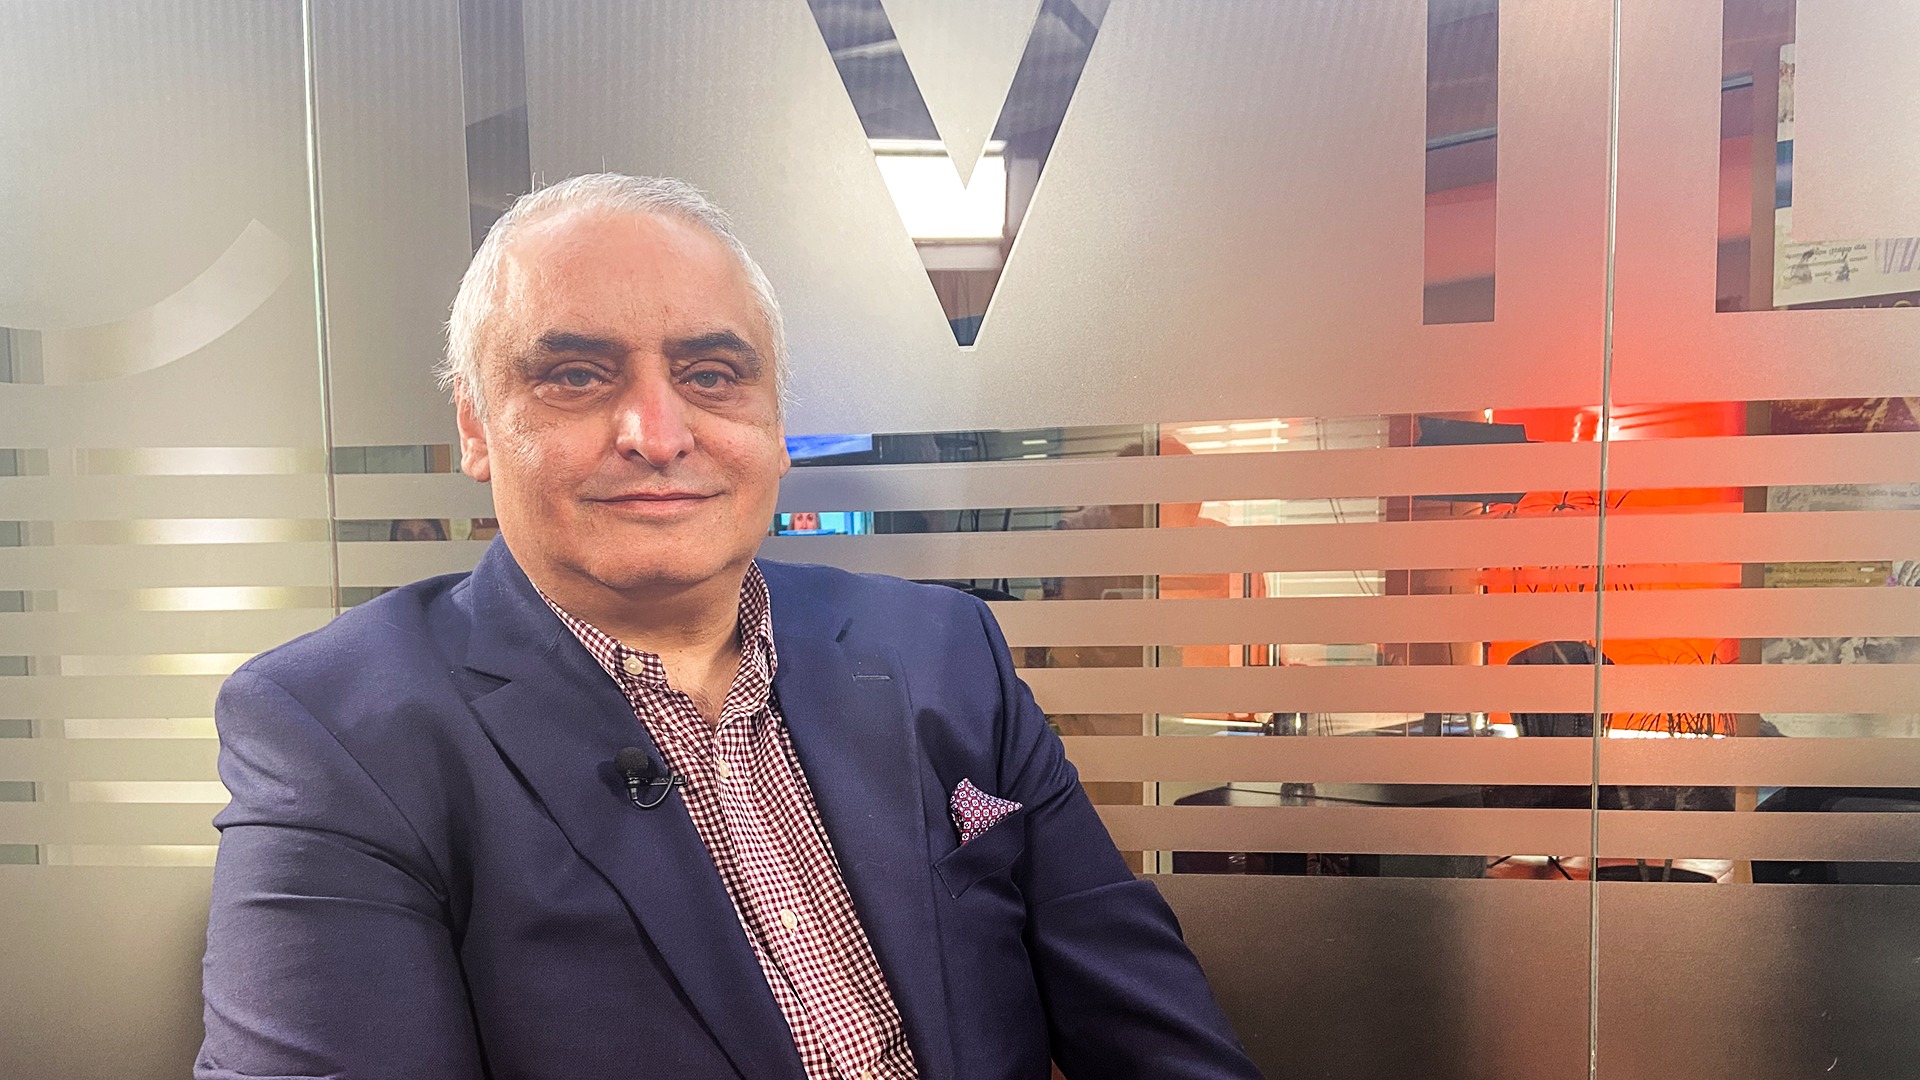 Պատերազմն անխուսափելի էր, իսկ պարտությունը՝ ոչ. Արթուր Մարտիրոսյան